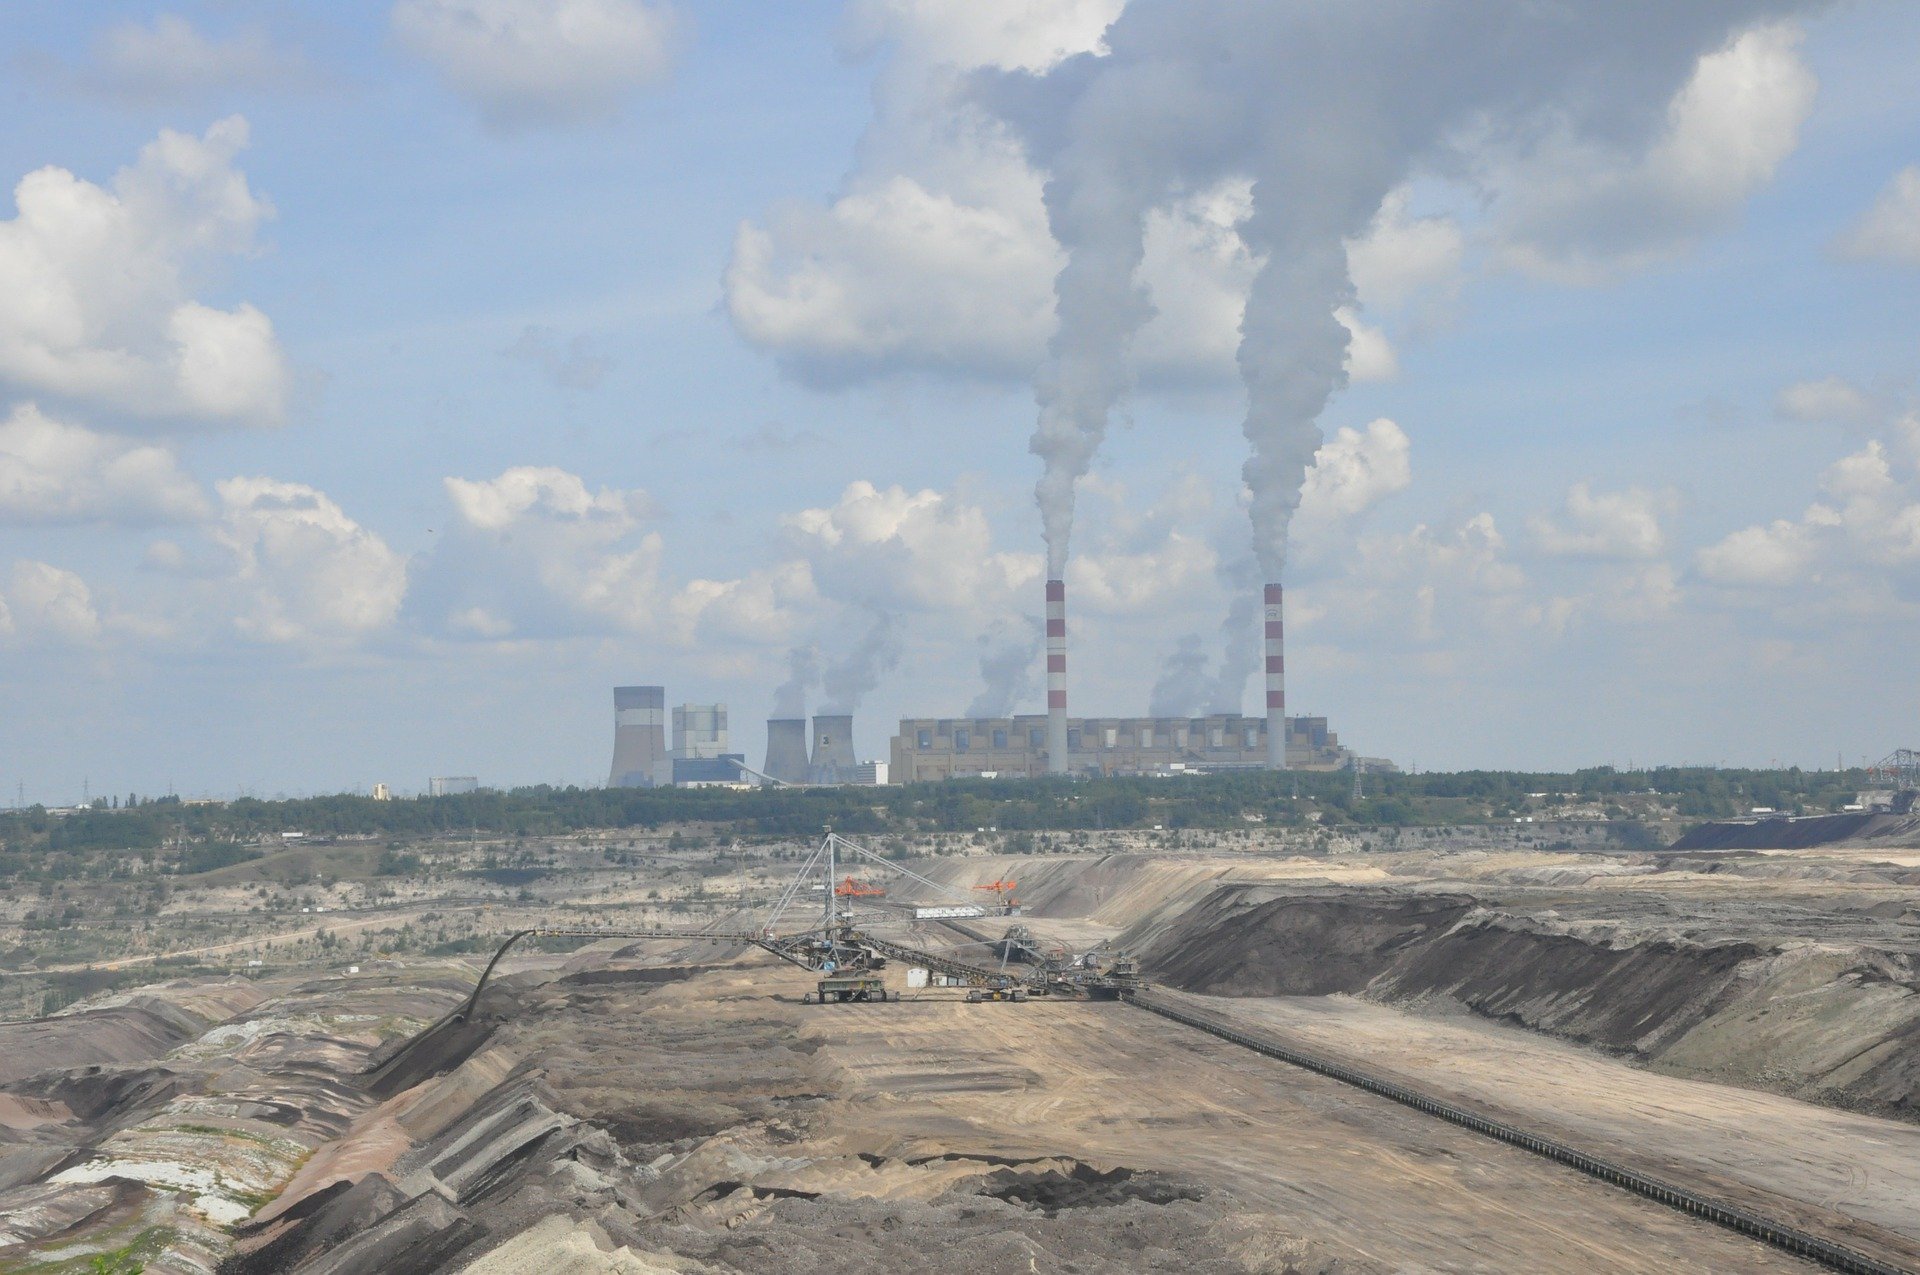 Het kan: Belchatów van grote vervuiler naar groene energieoase binnen 15 jaar